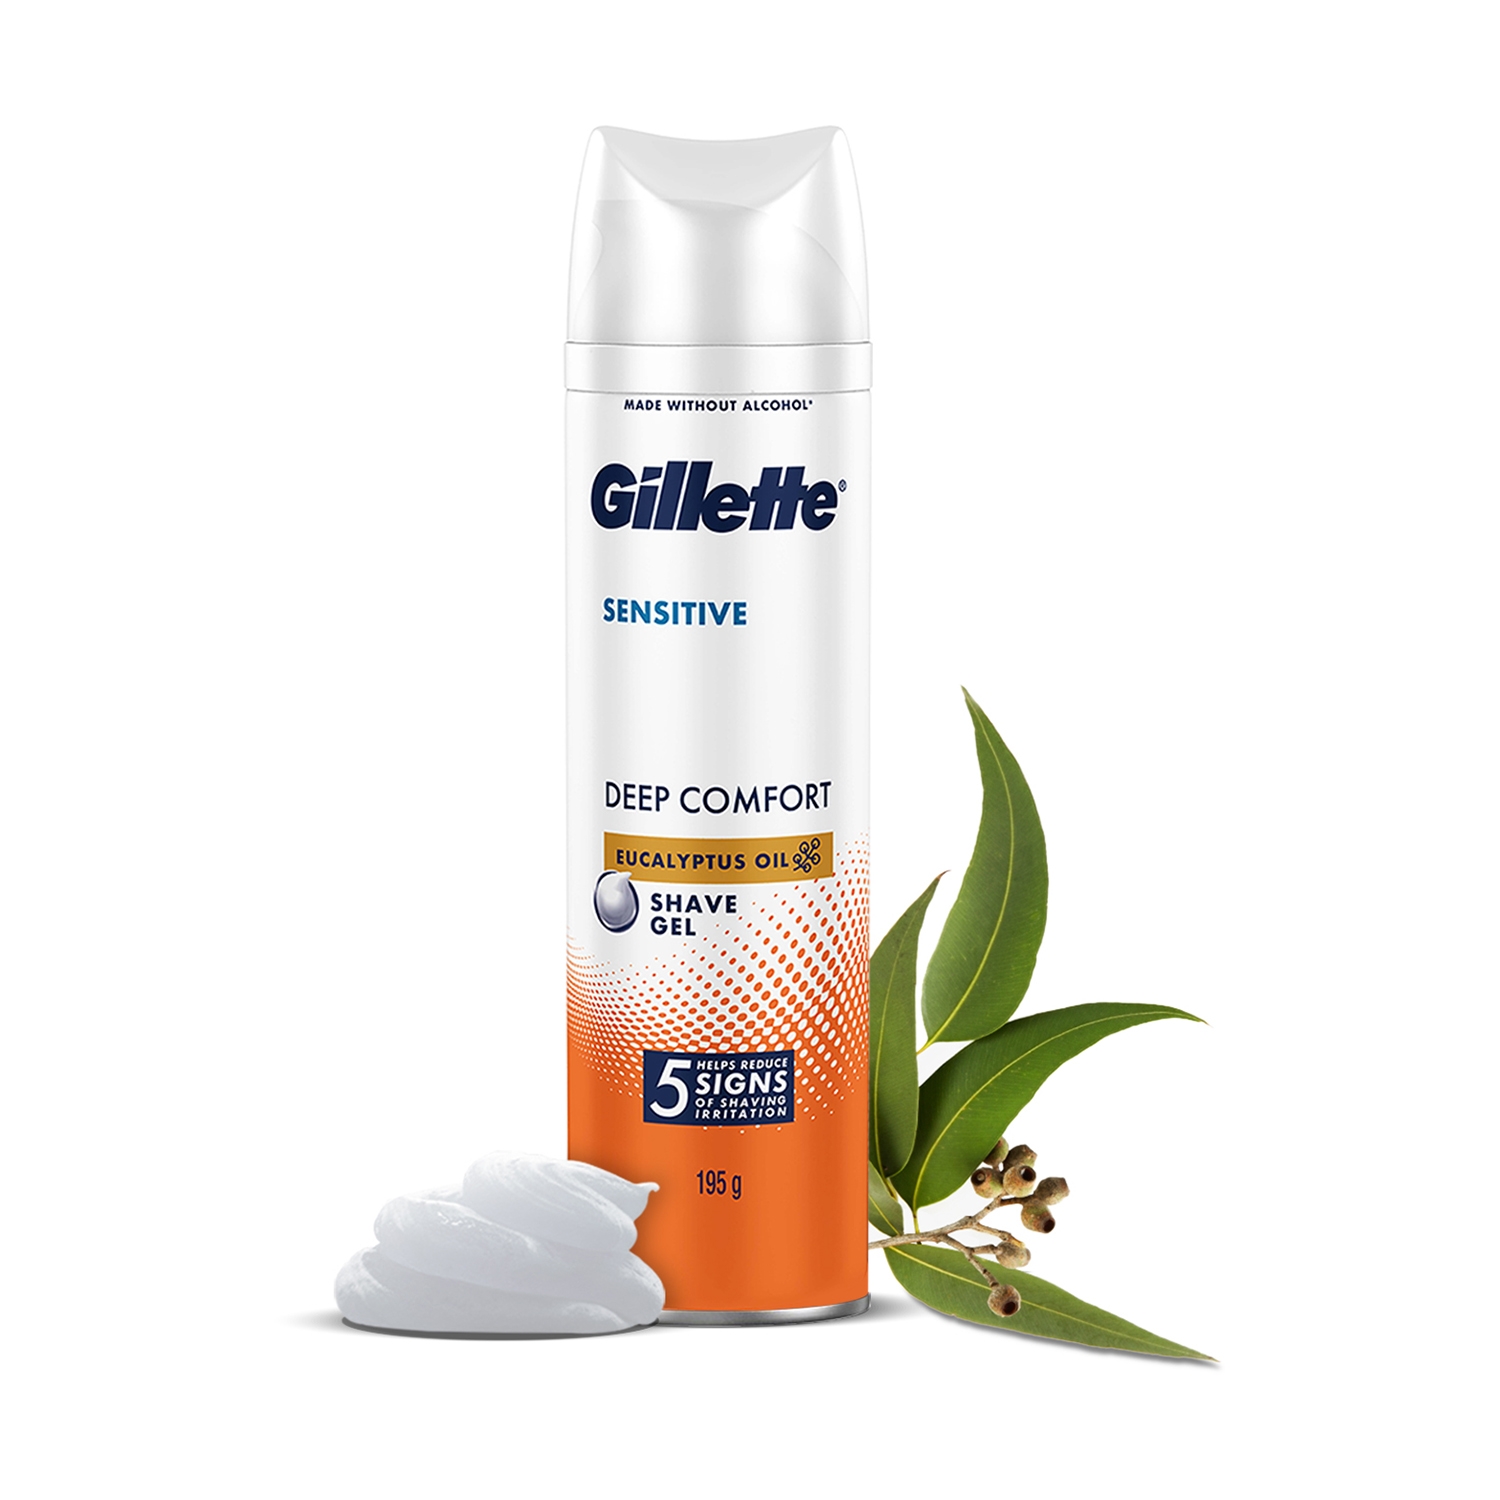 Gillette | Gillette Sensitive Shaving Gel Deep Comfort with Aloe Vera (195g)